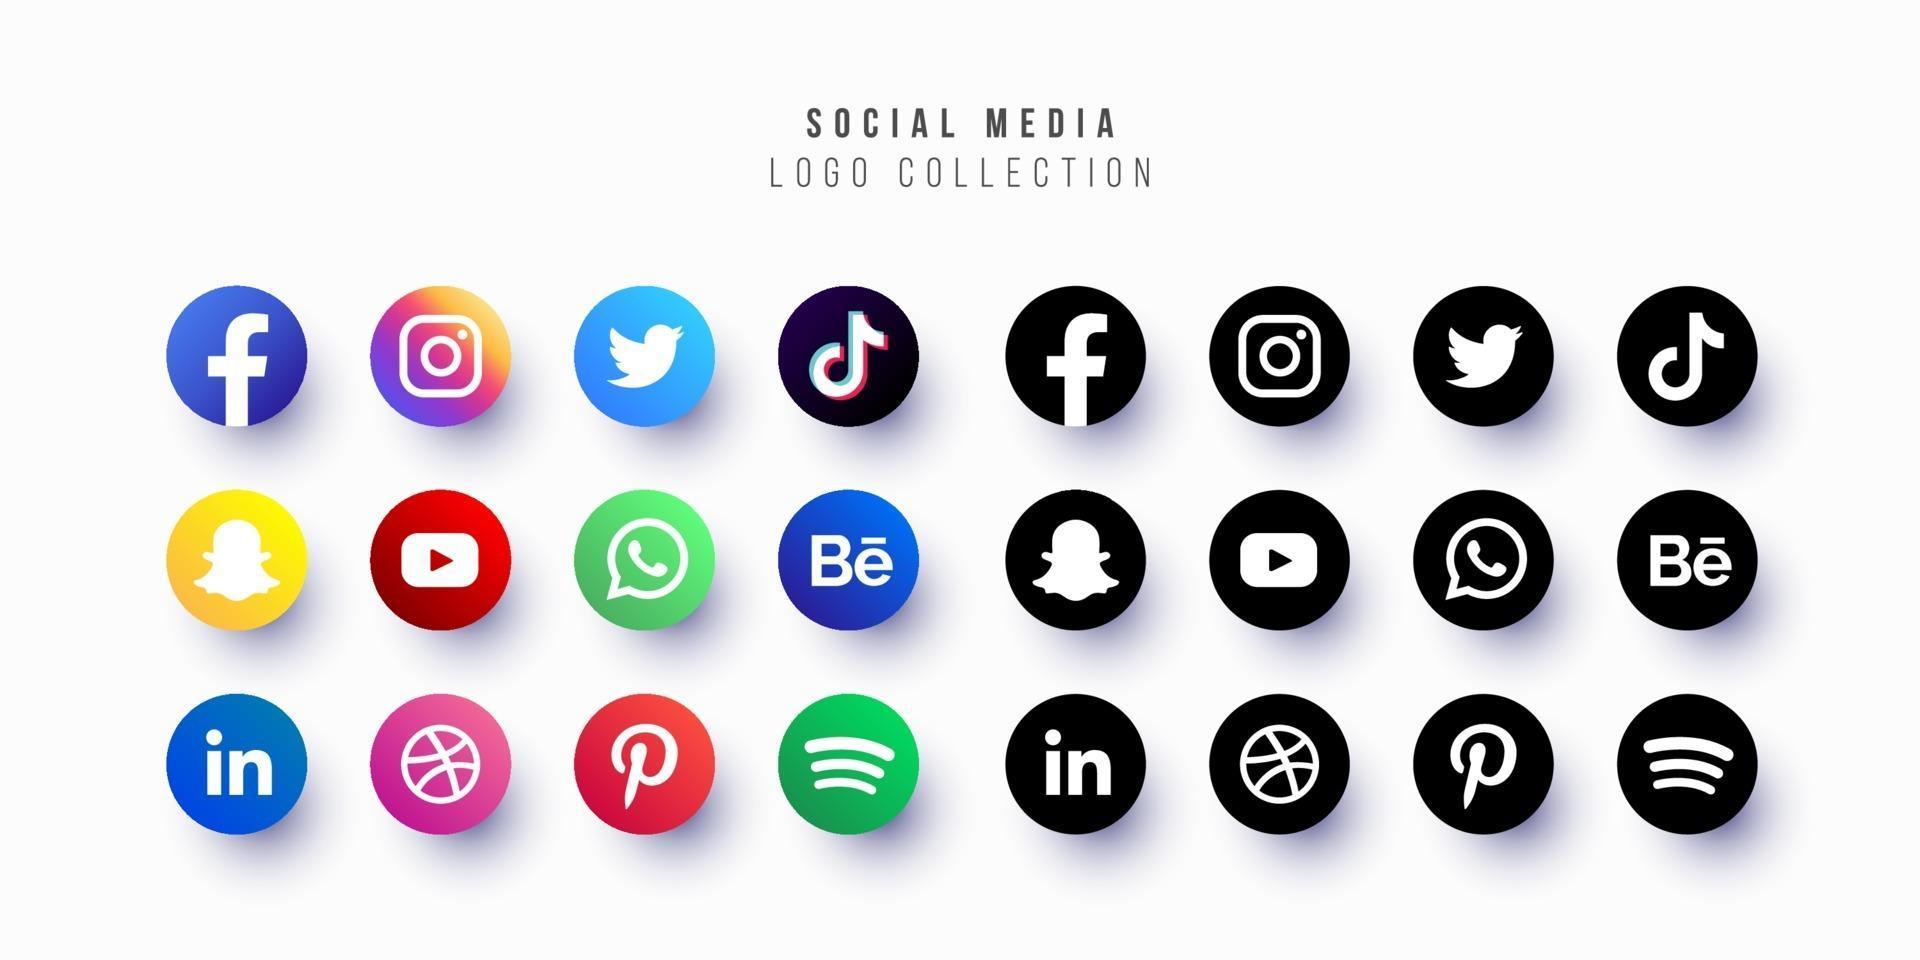 social media logo ideas 3